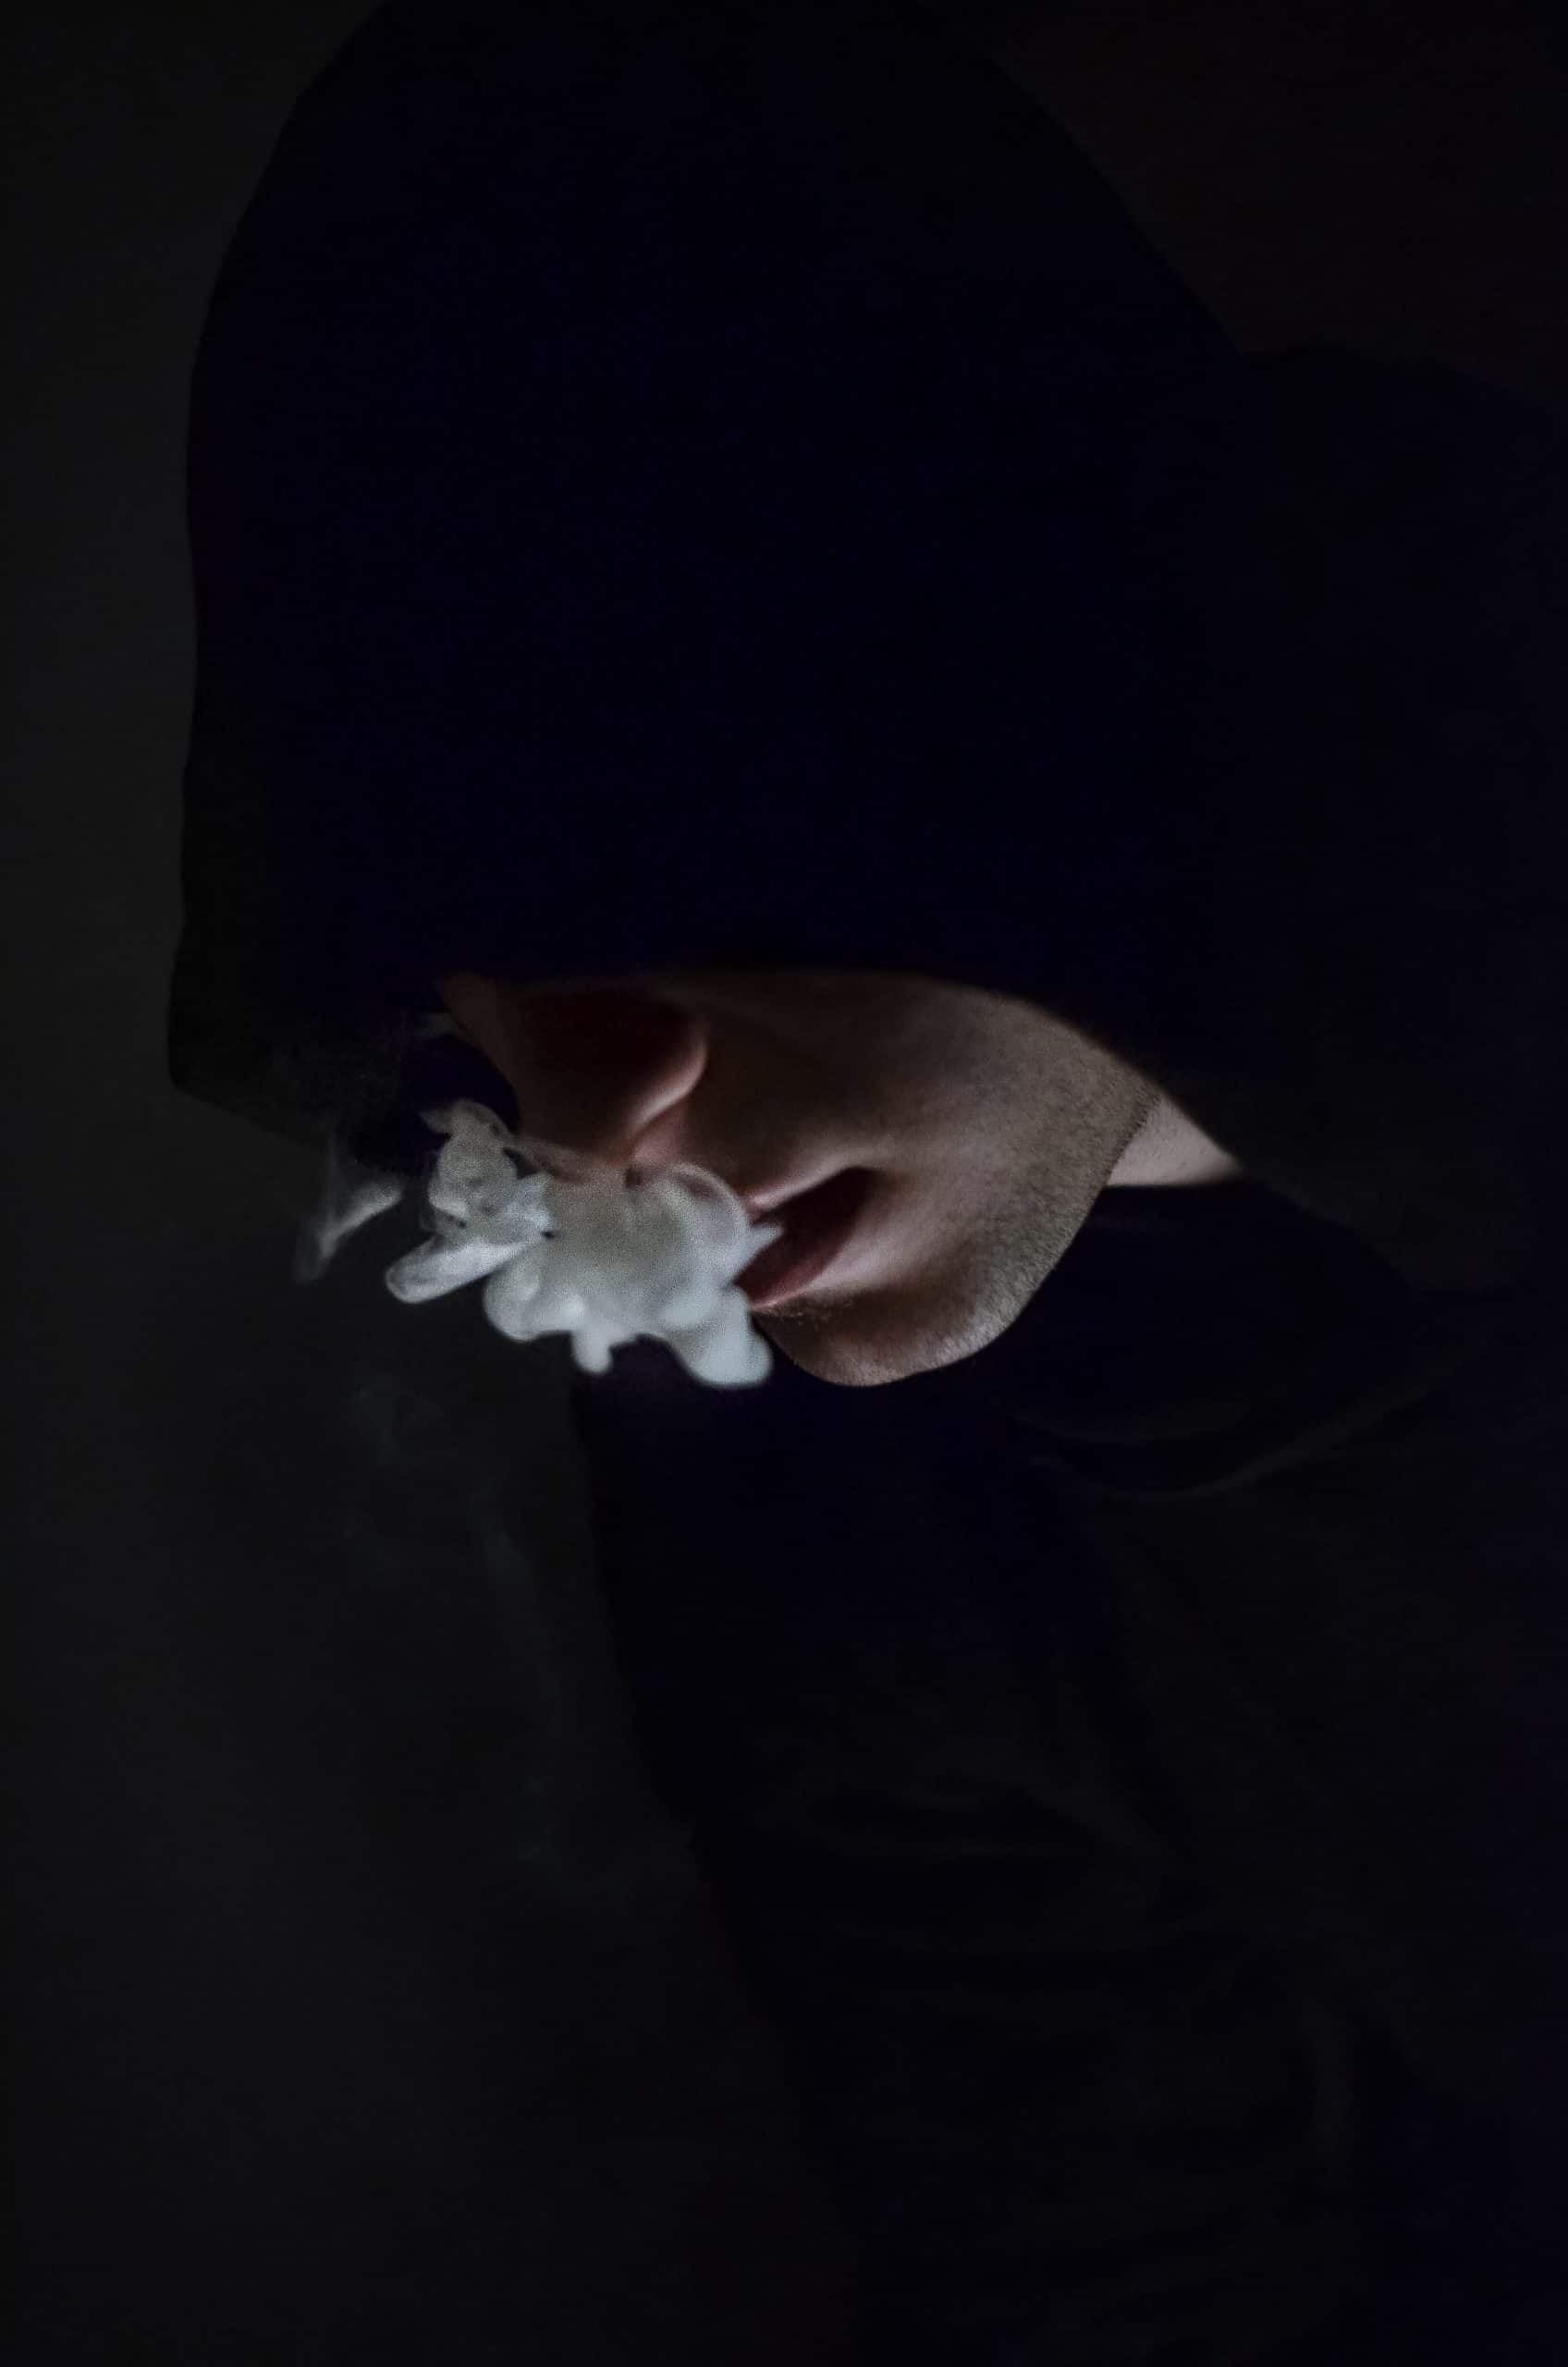 Young man smoking marijuana and psychosis